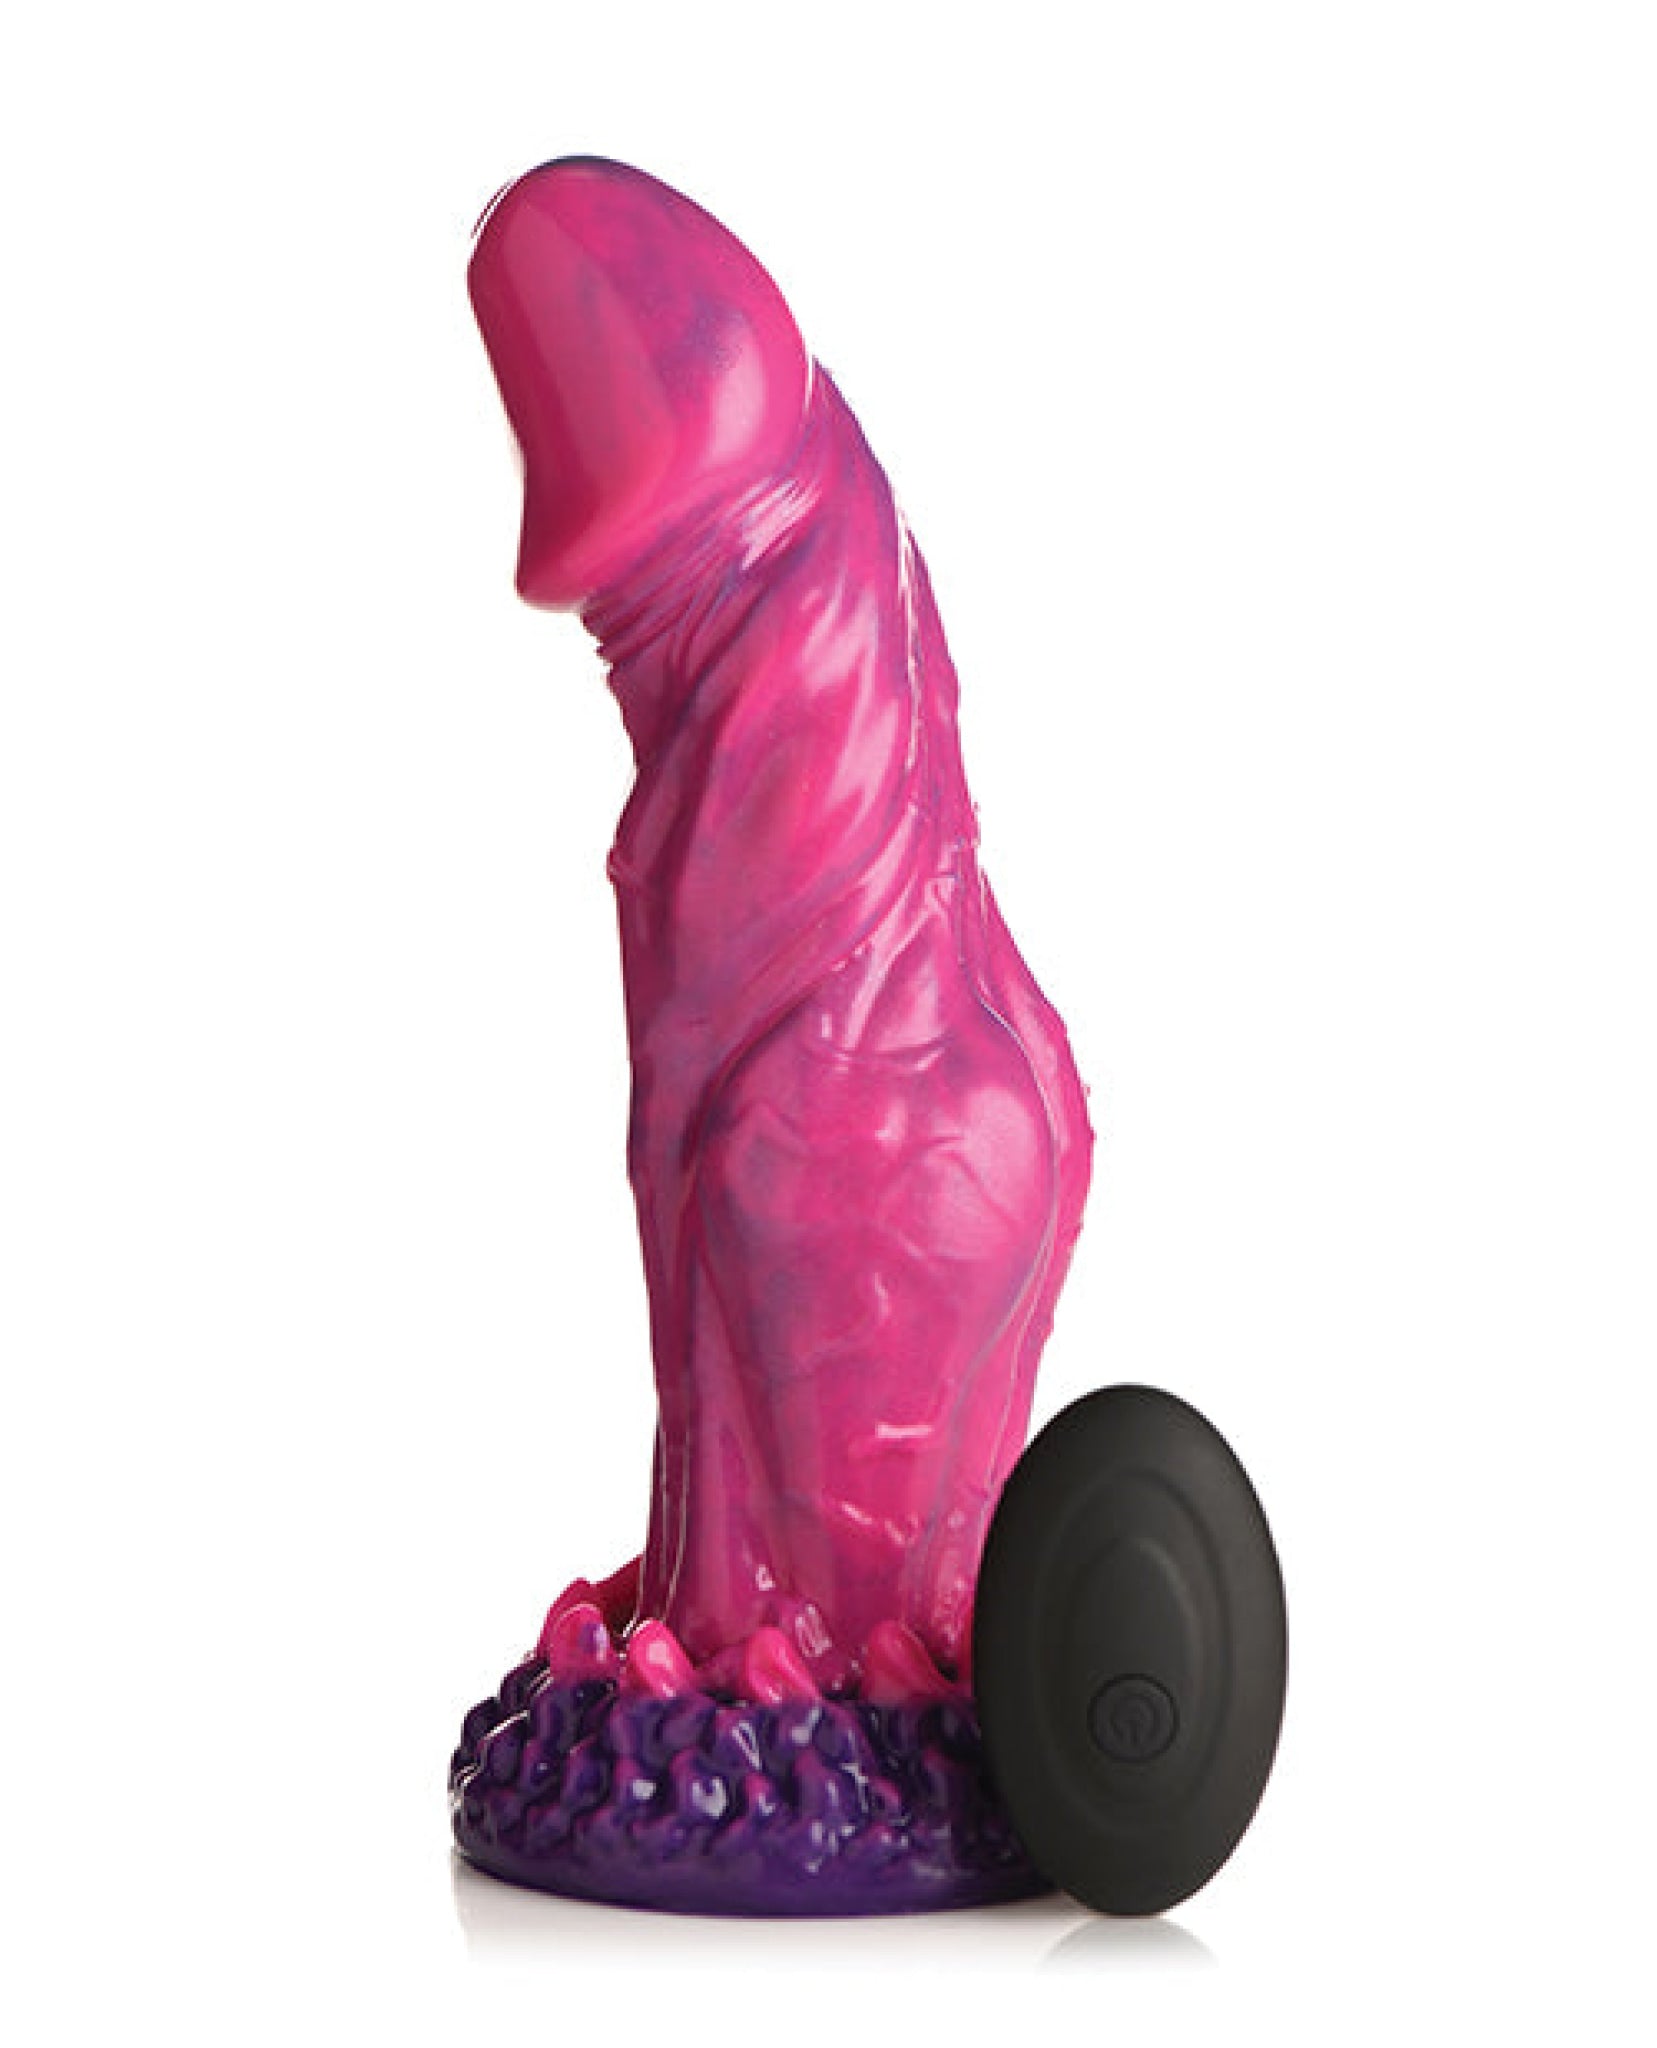 Creature Cocks Xenox Vibrating Silicone Dildo w/Remote - Pink/Purple Xr LLC